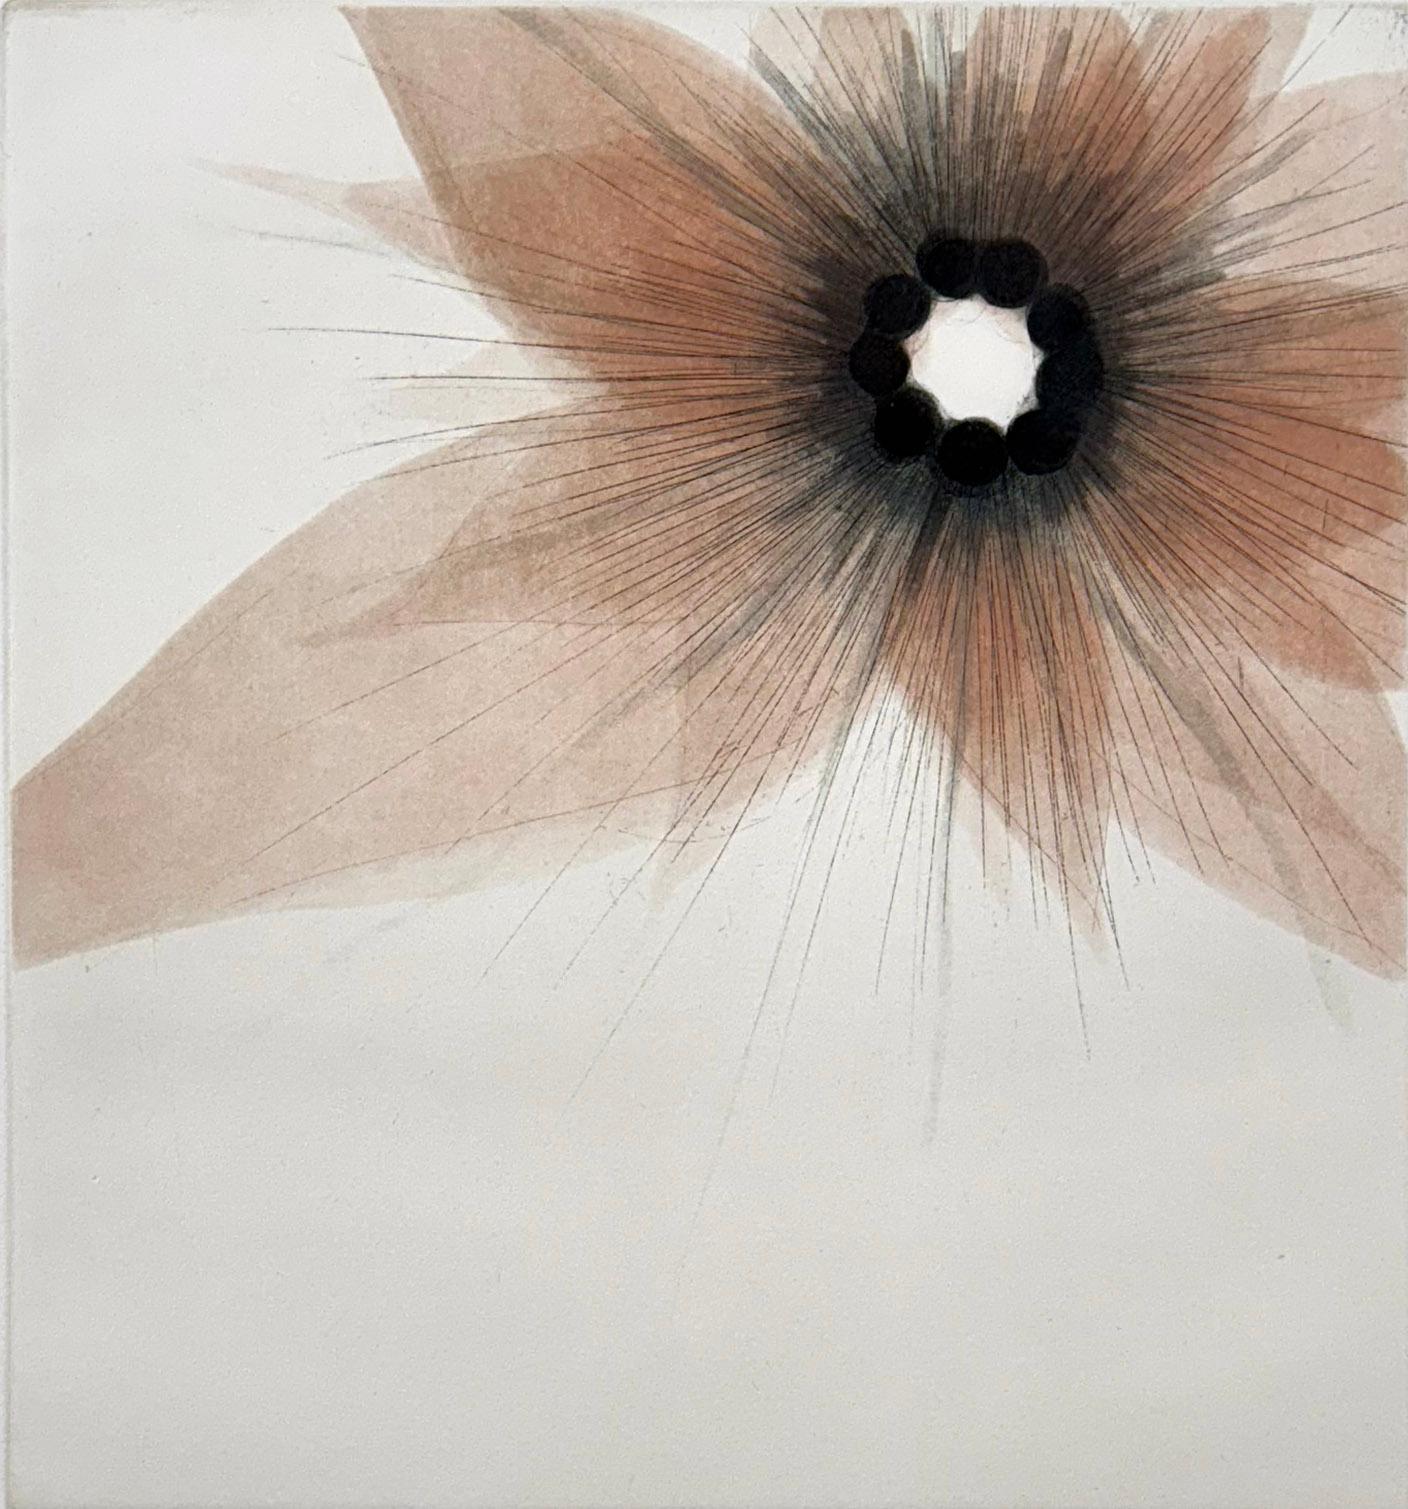 Medium: Radierung,Aquatinta
Bildgröße: 12 × 11 
Blattgröße: 22 × 18 Zoll 
Auflage von 30 Stück
Jahr: 2008
Signiert und betitelt vom Künstler

Die Blütenserie ist zwar von Blumen inspiriert, zeigt aber auch die Vorliebe des Künstlers für abstrakte